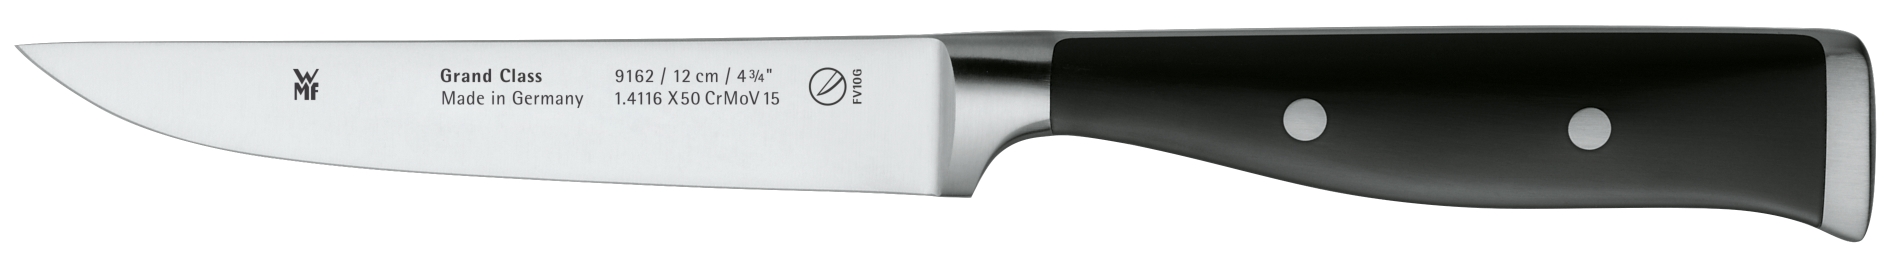 Универсальный нож Grand Class 12 см универсальный фильтр пакет для заваривания бацькина баня